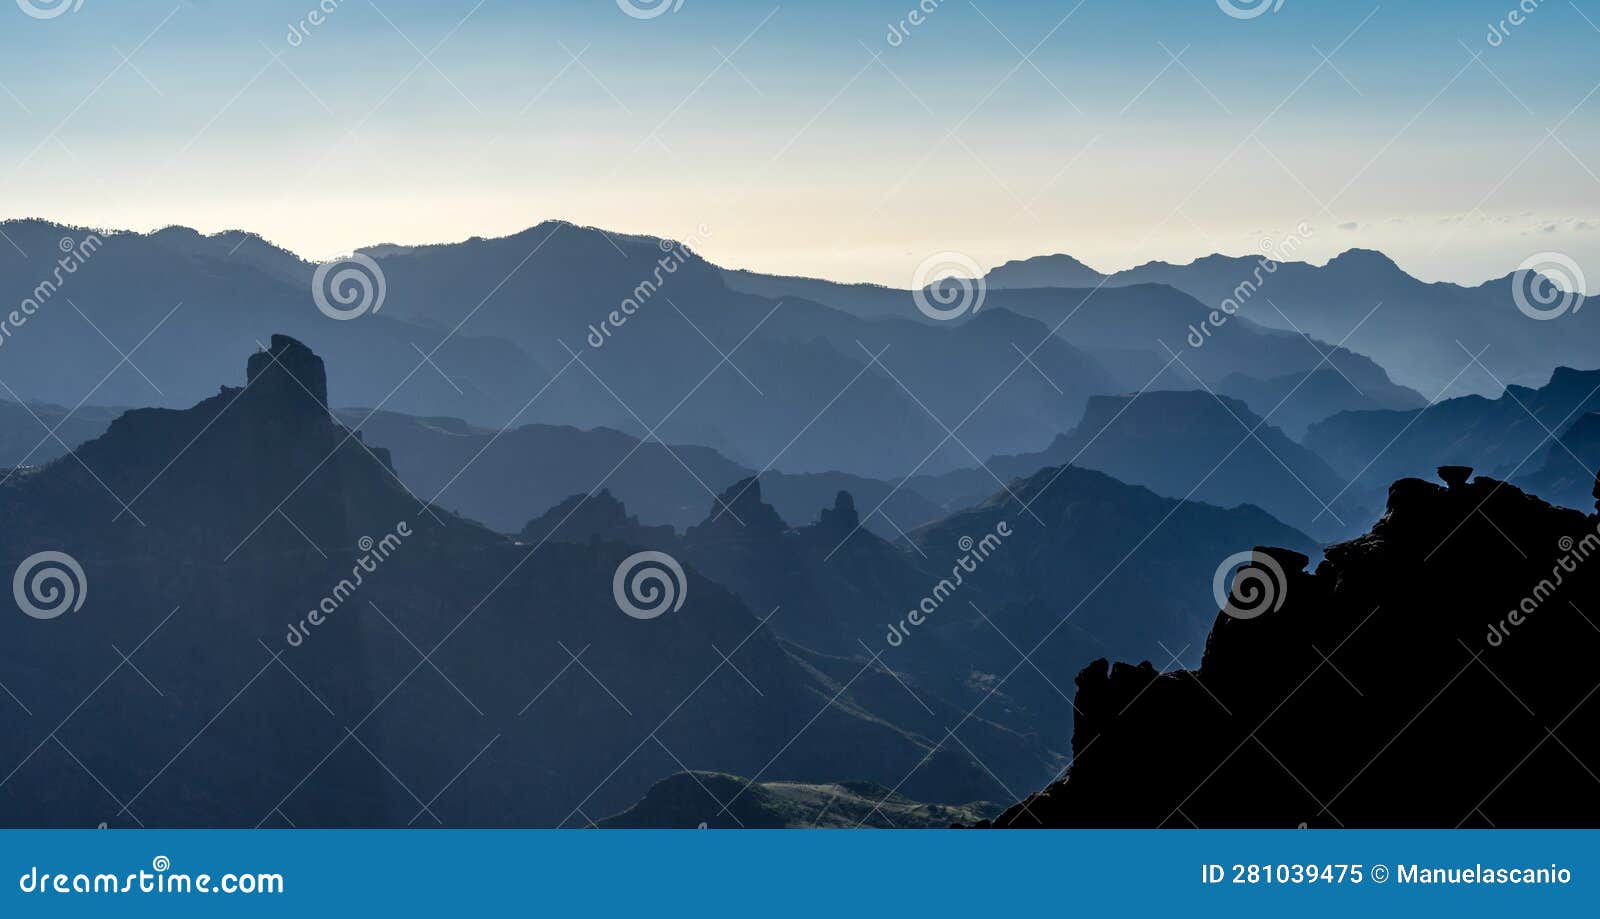 misty view of mountain layer silhouettes at caldera de tejeda, degollada de las palomas, gran canaria island, spain